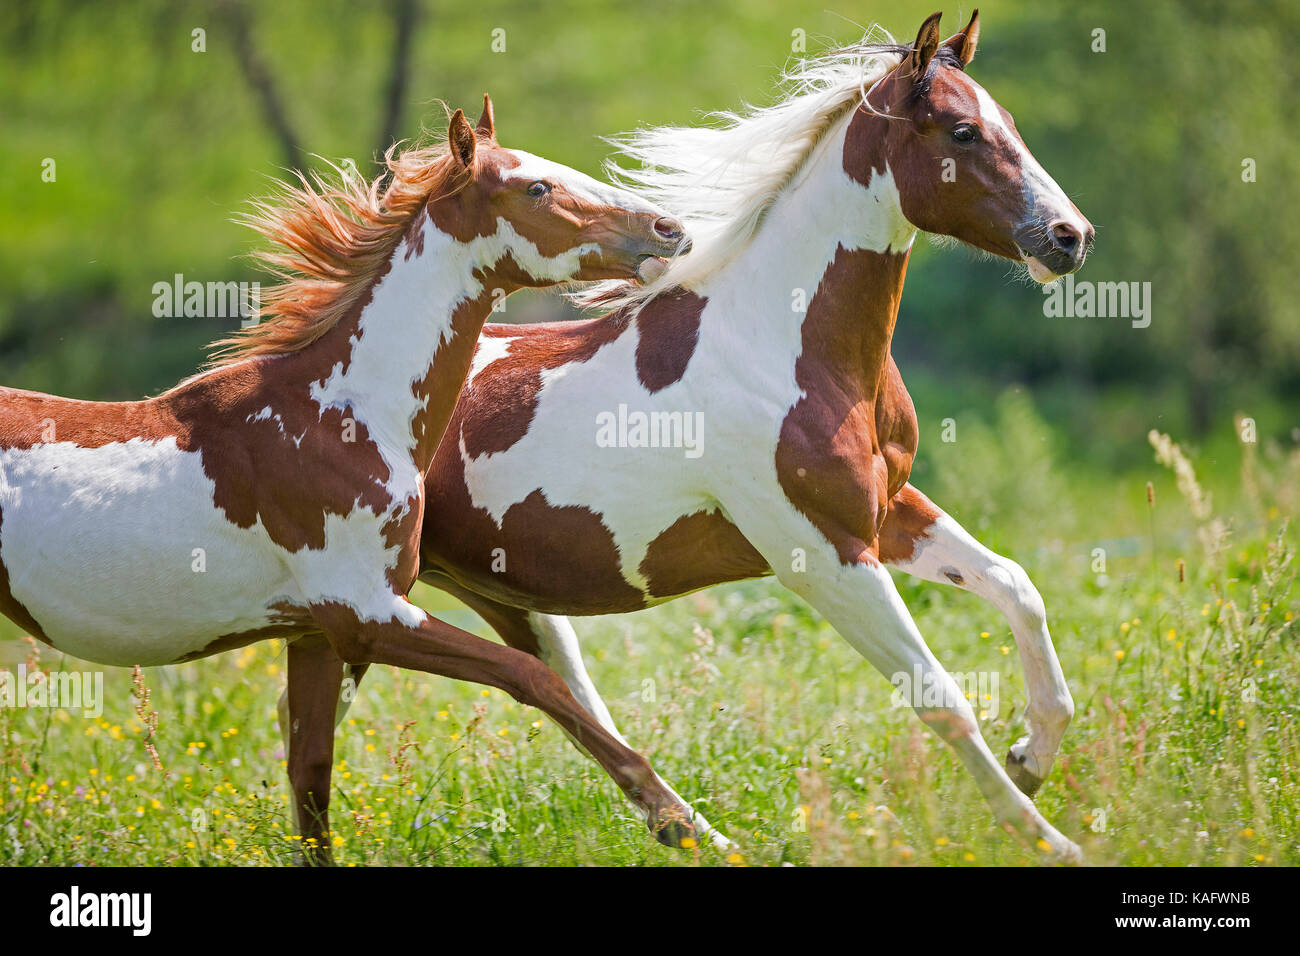 American Paint horse. Deux chevaux galopant sur une prairie. L'Autriche Banque D'Images